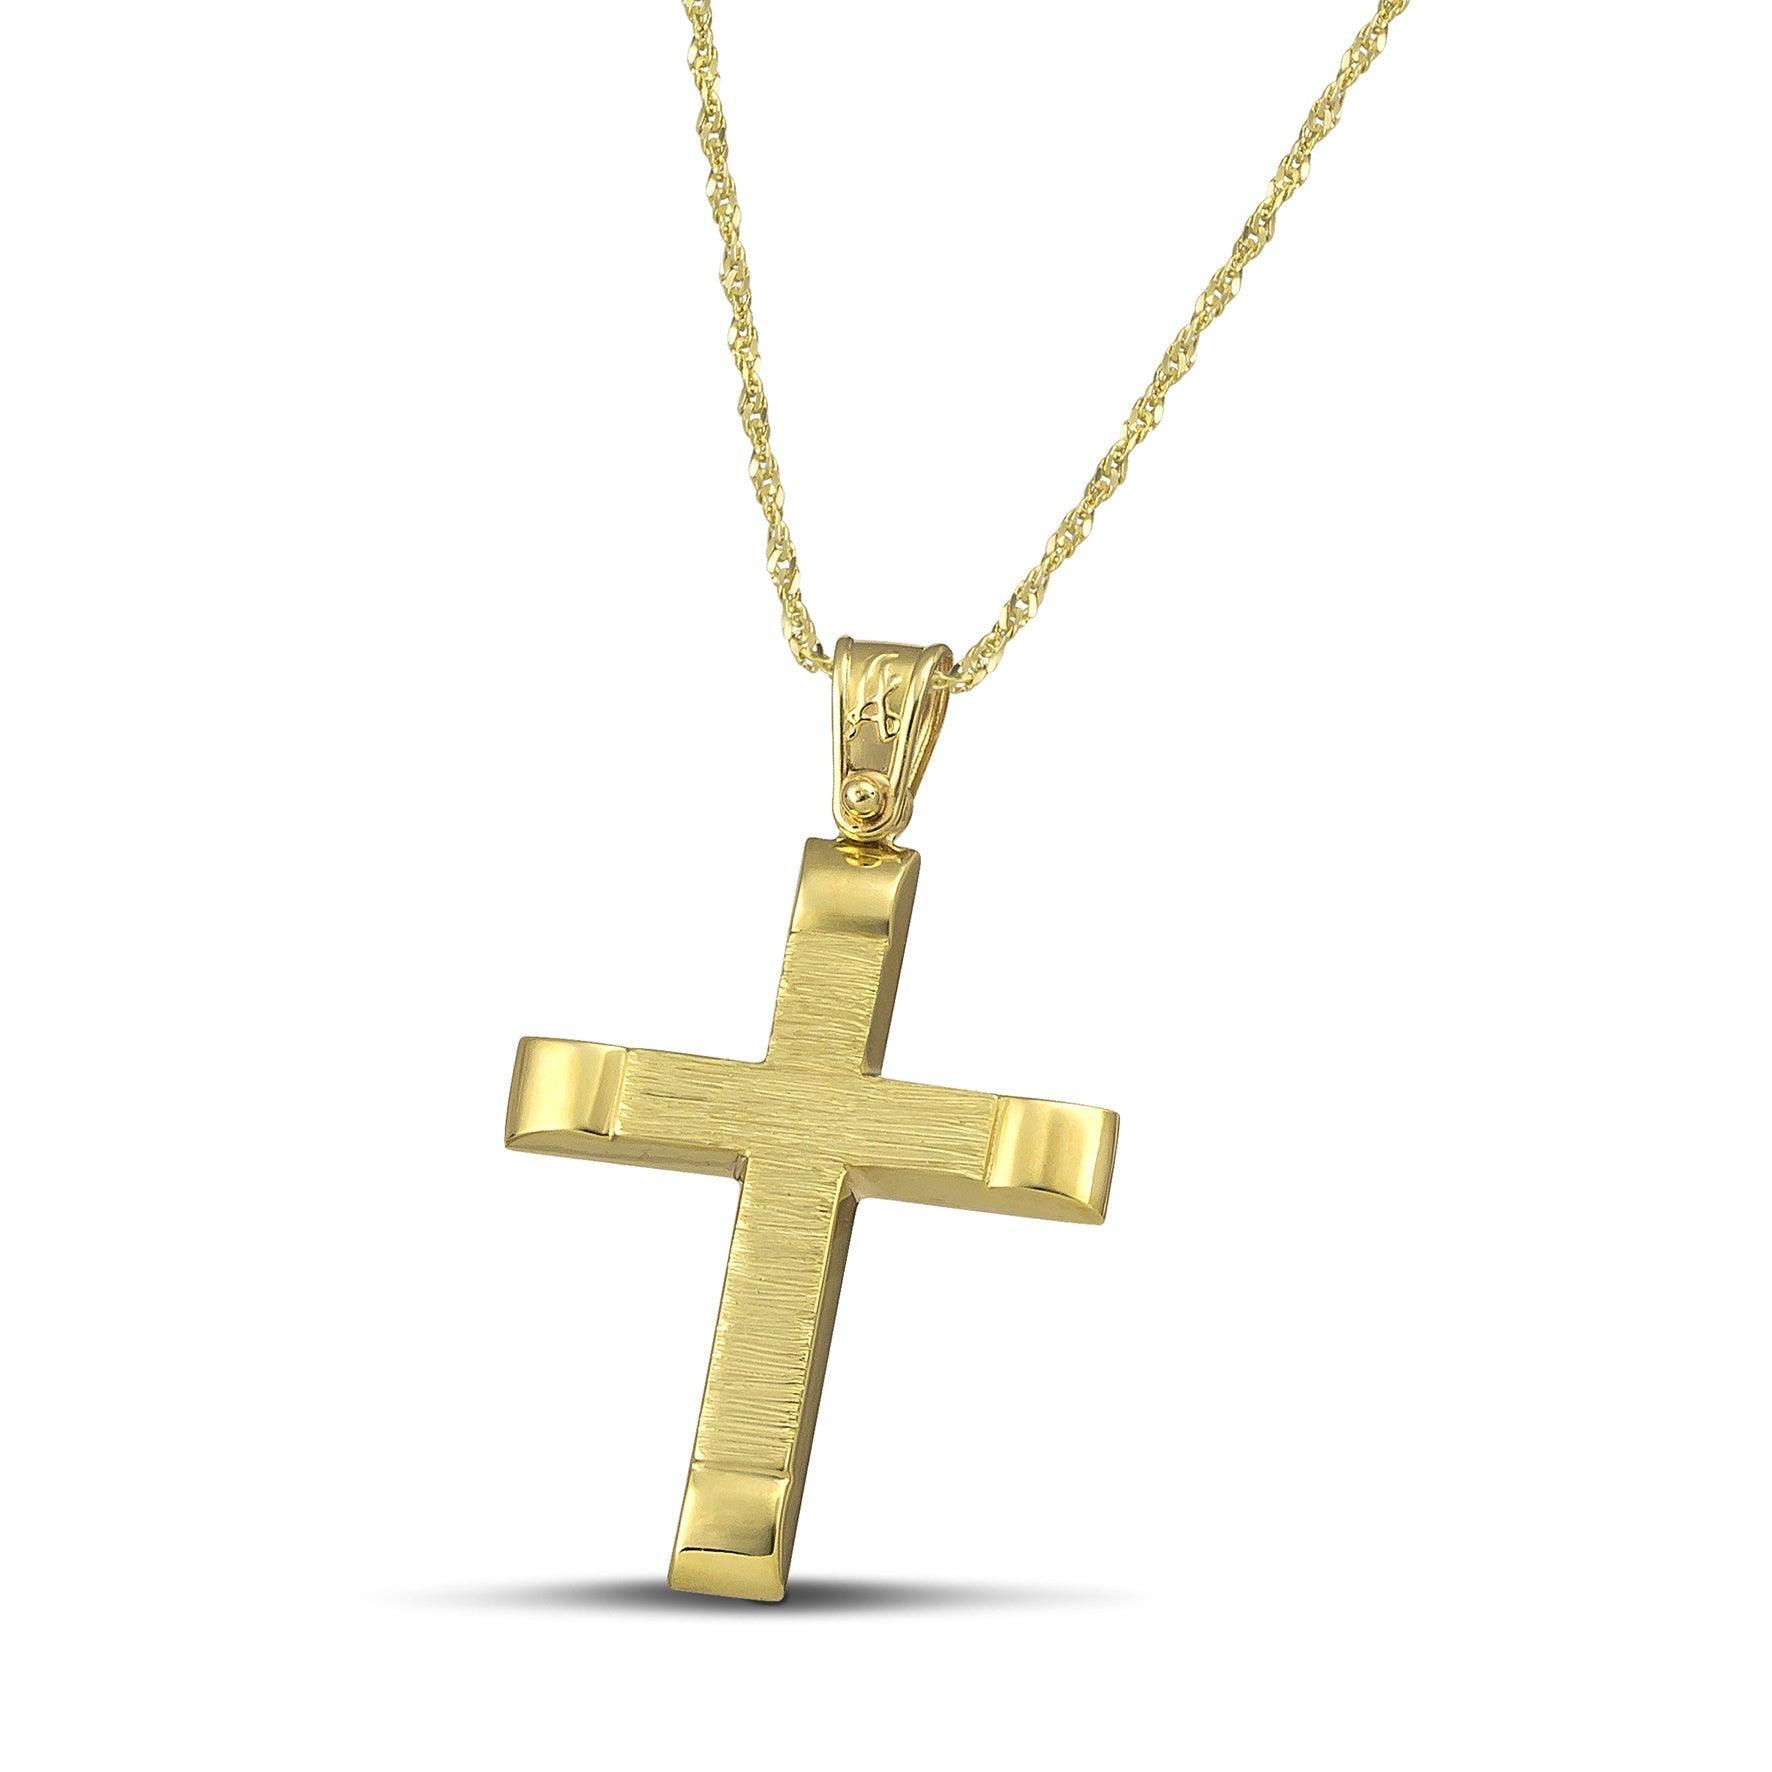 Αντρικός χρυσός βαφτιστικός σταυρός Κ14, σαγρέ με λουστράτες άκρες και λεπτή, στριφτή αλυσίδα.